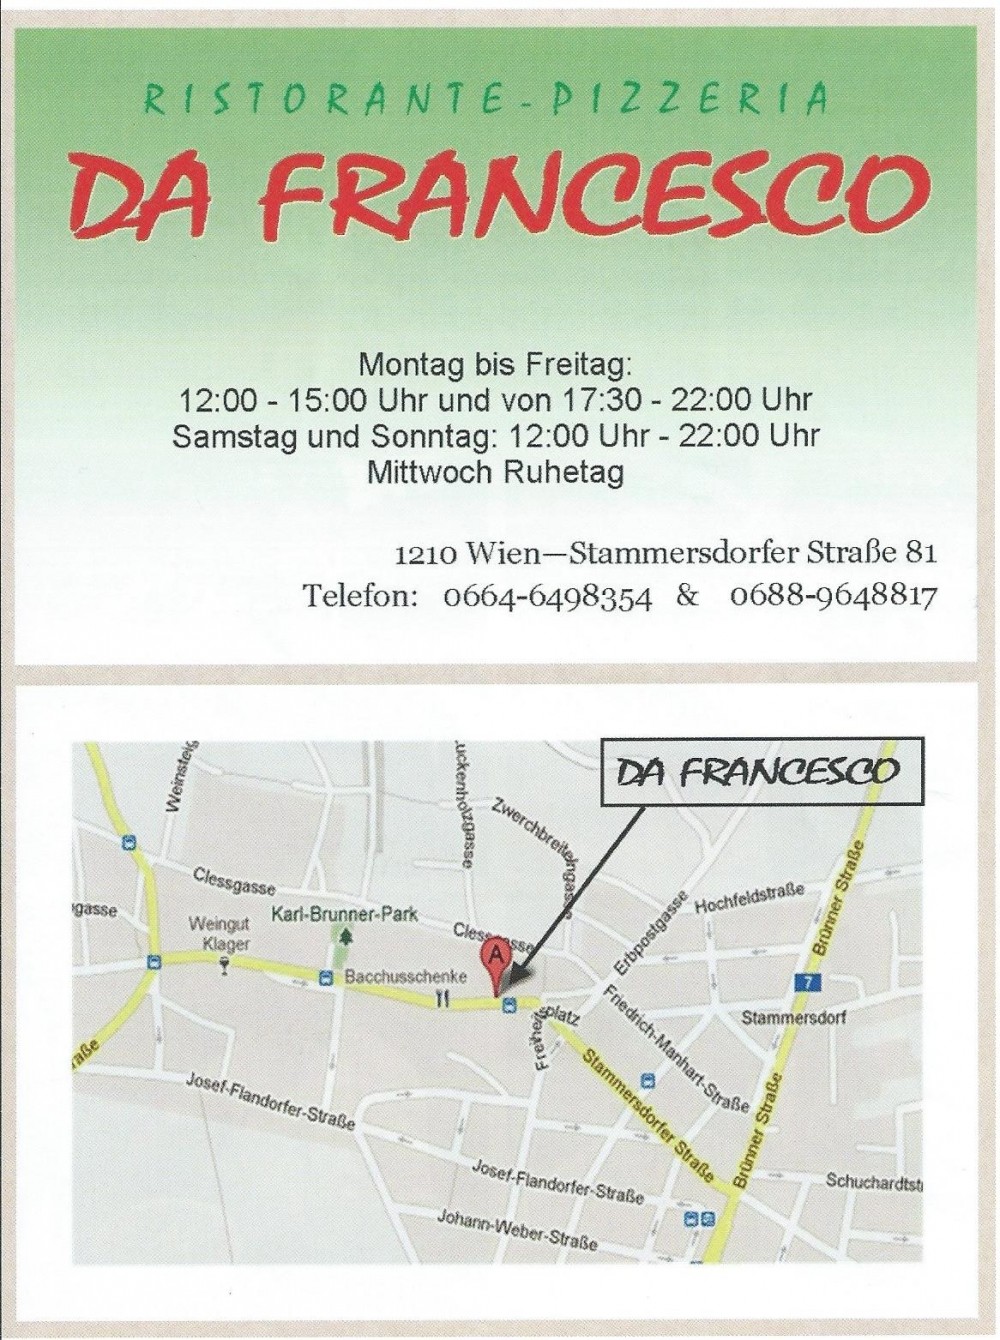 Anfahrtsplan - DA FRANCESCO - Wien